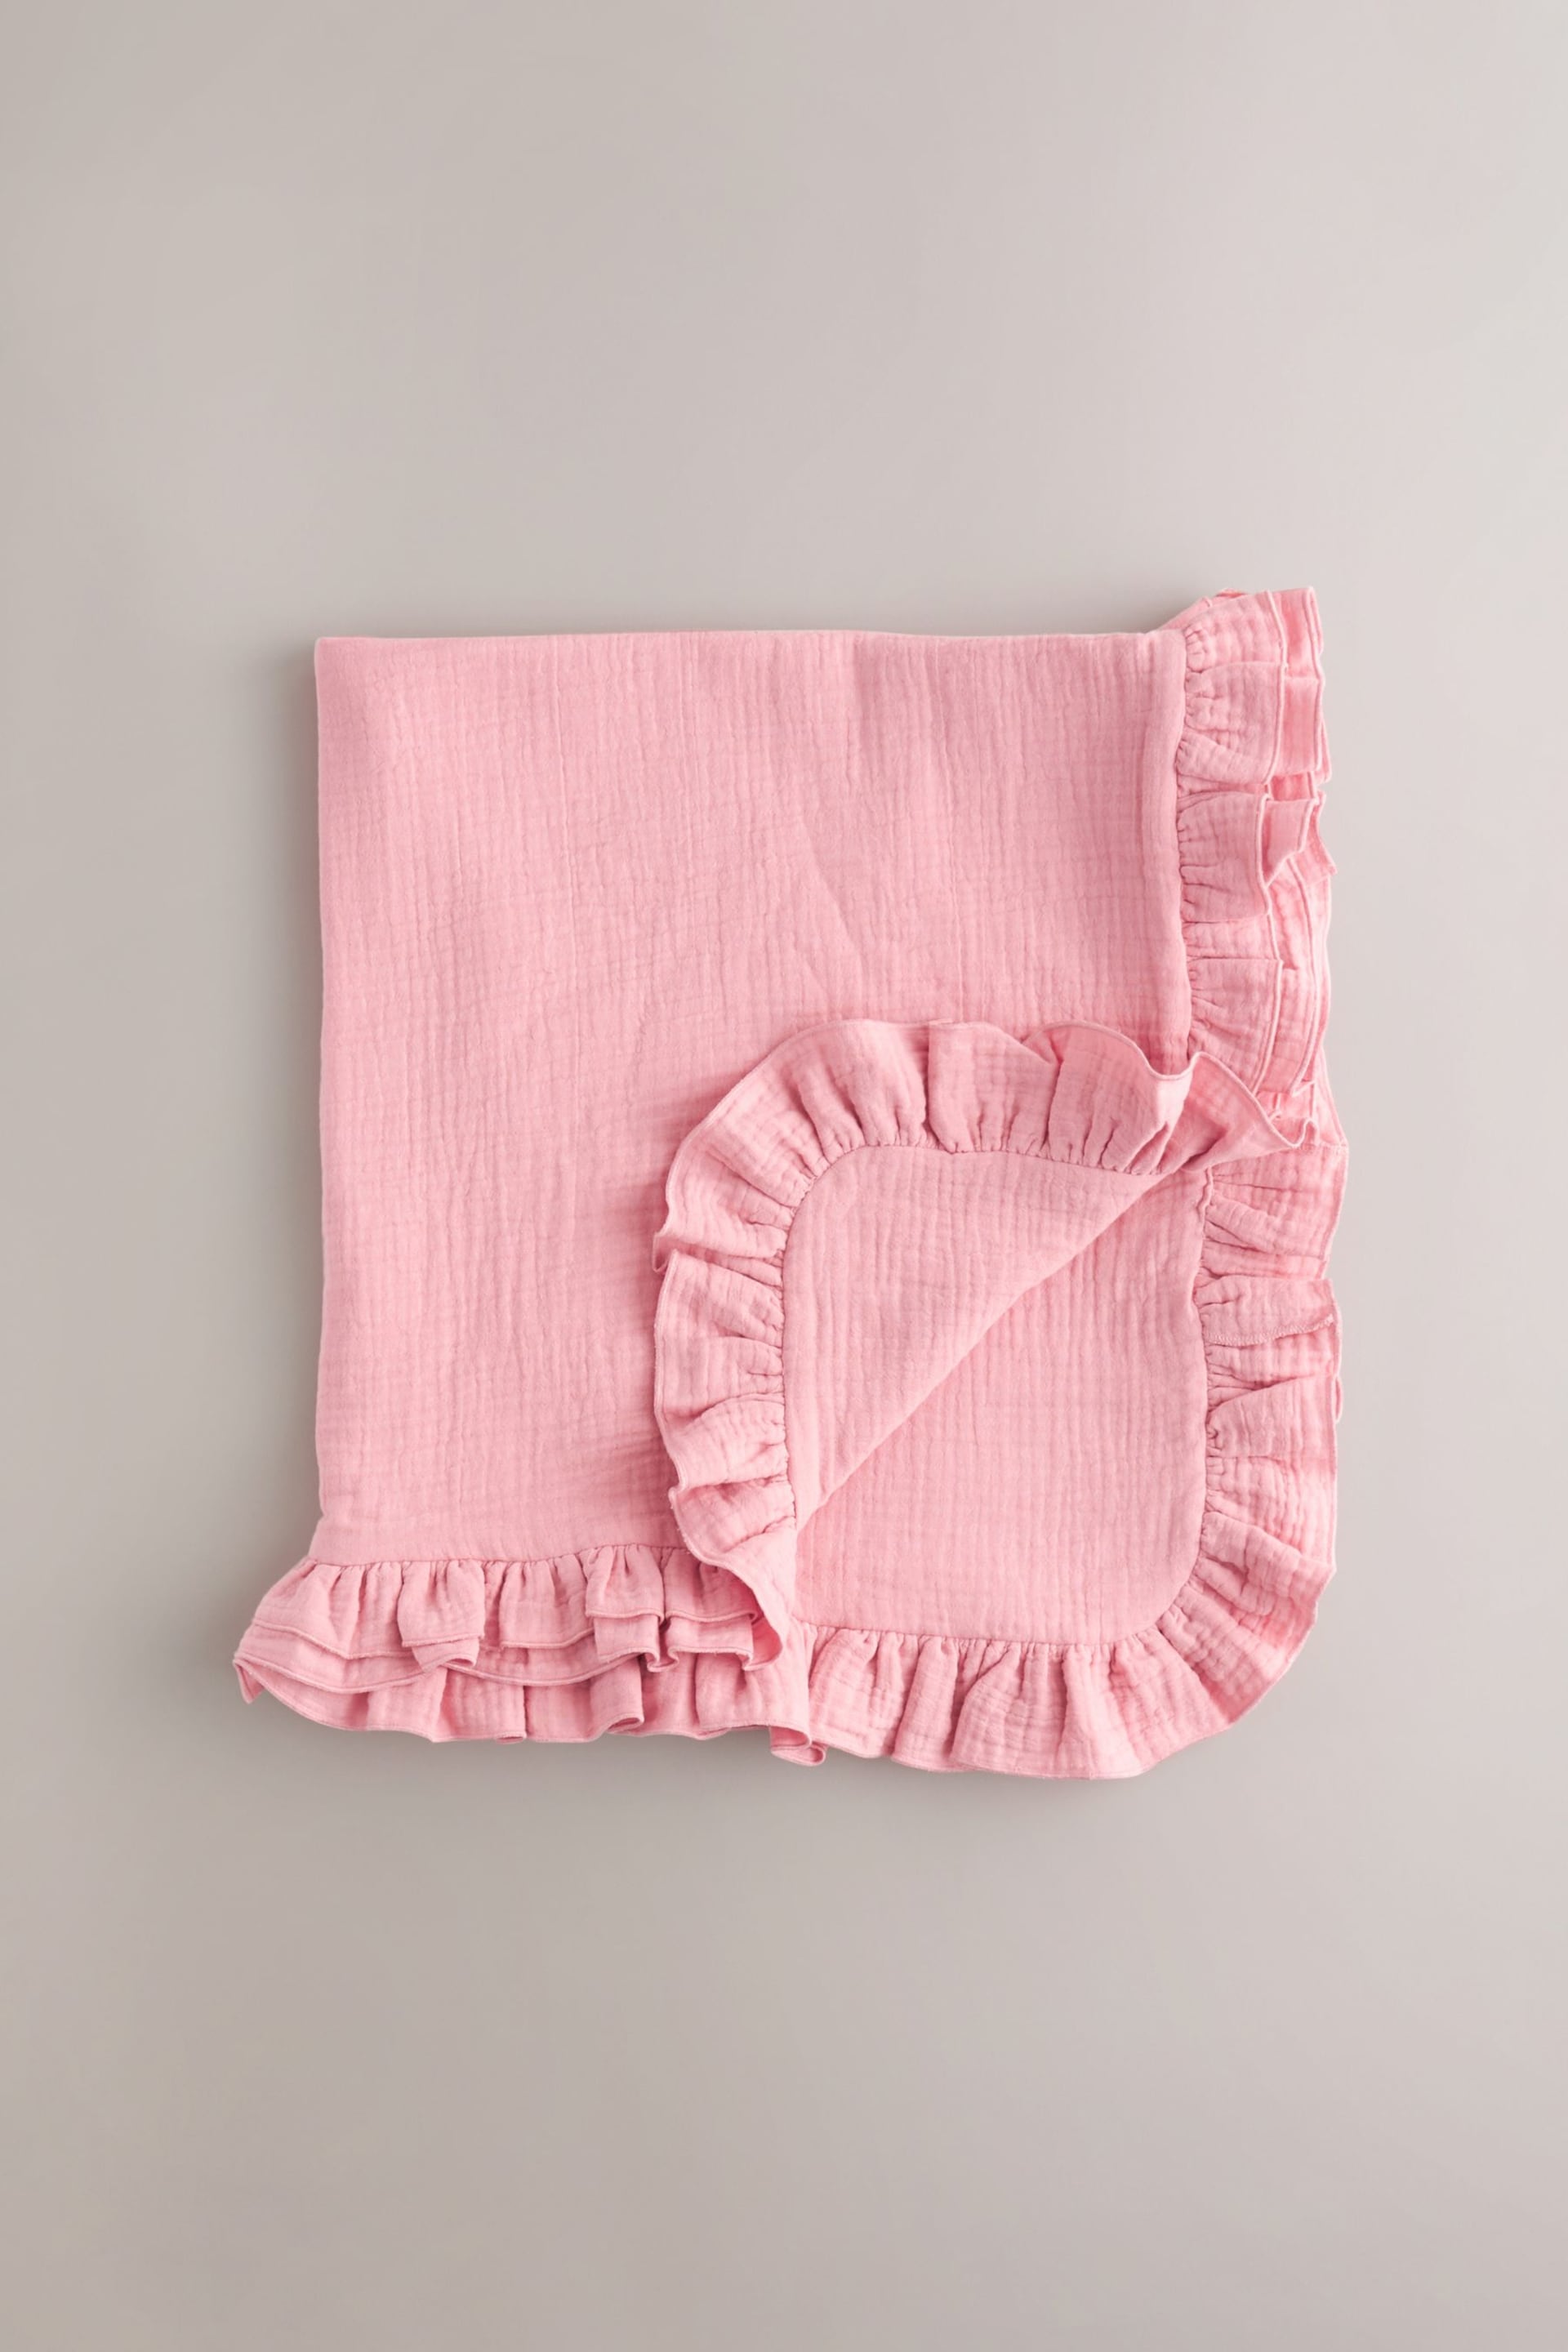 Muslin Pink Baby Blanket - Image 1 of 5